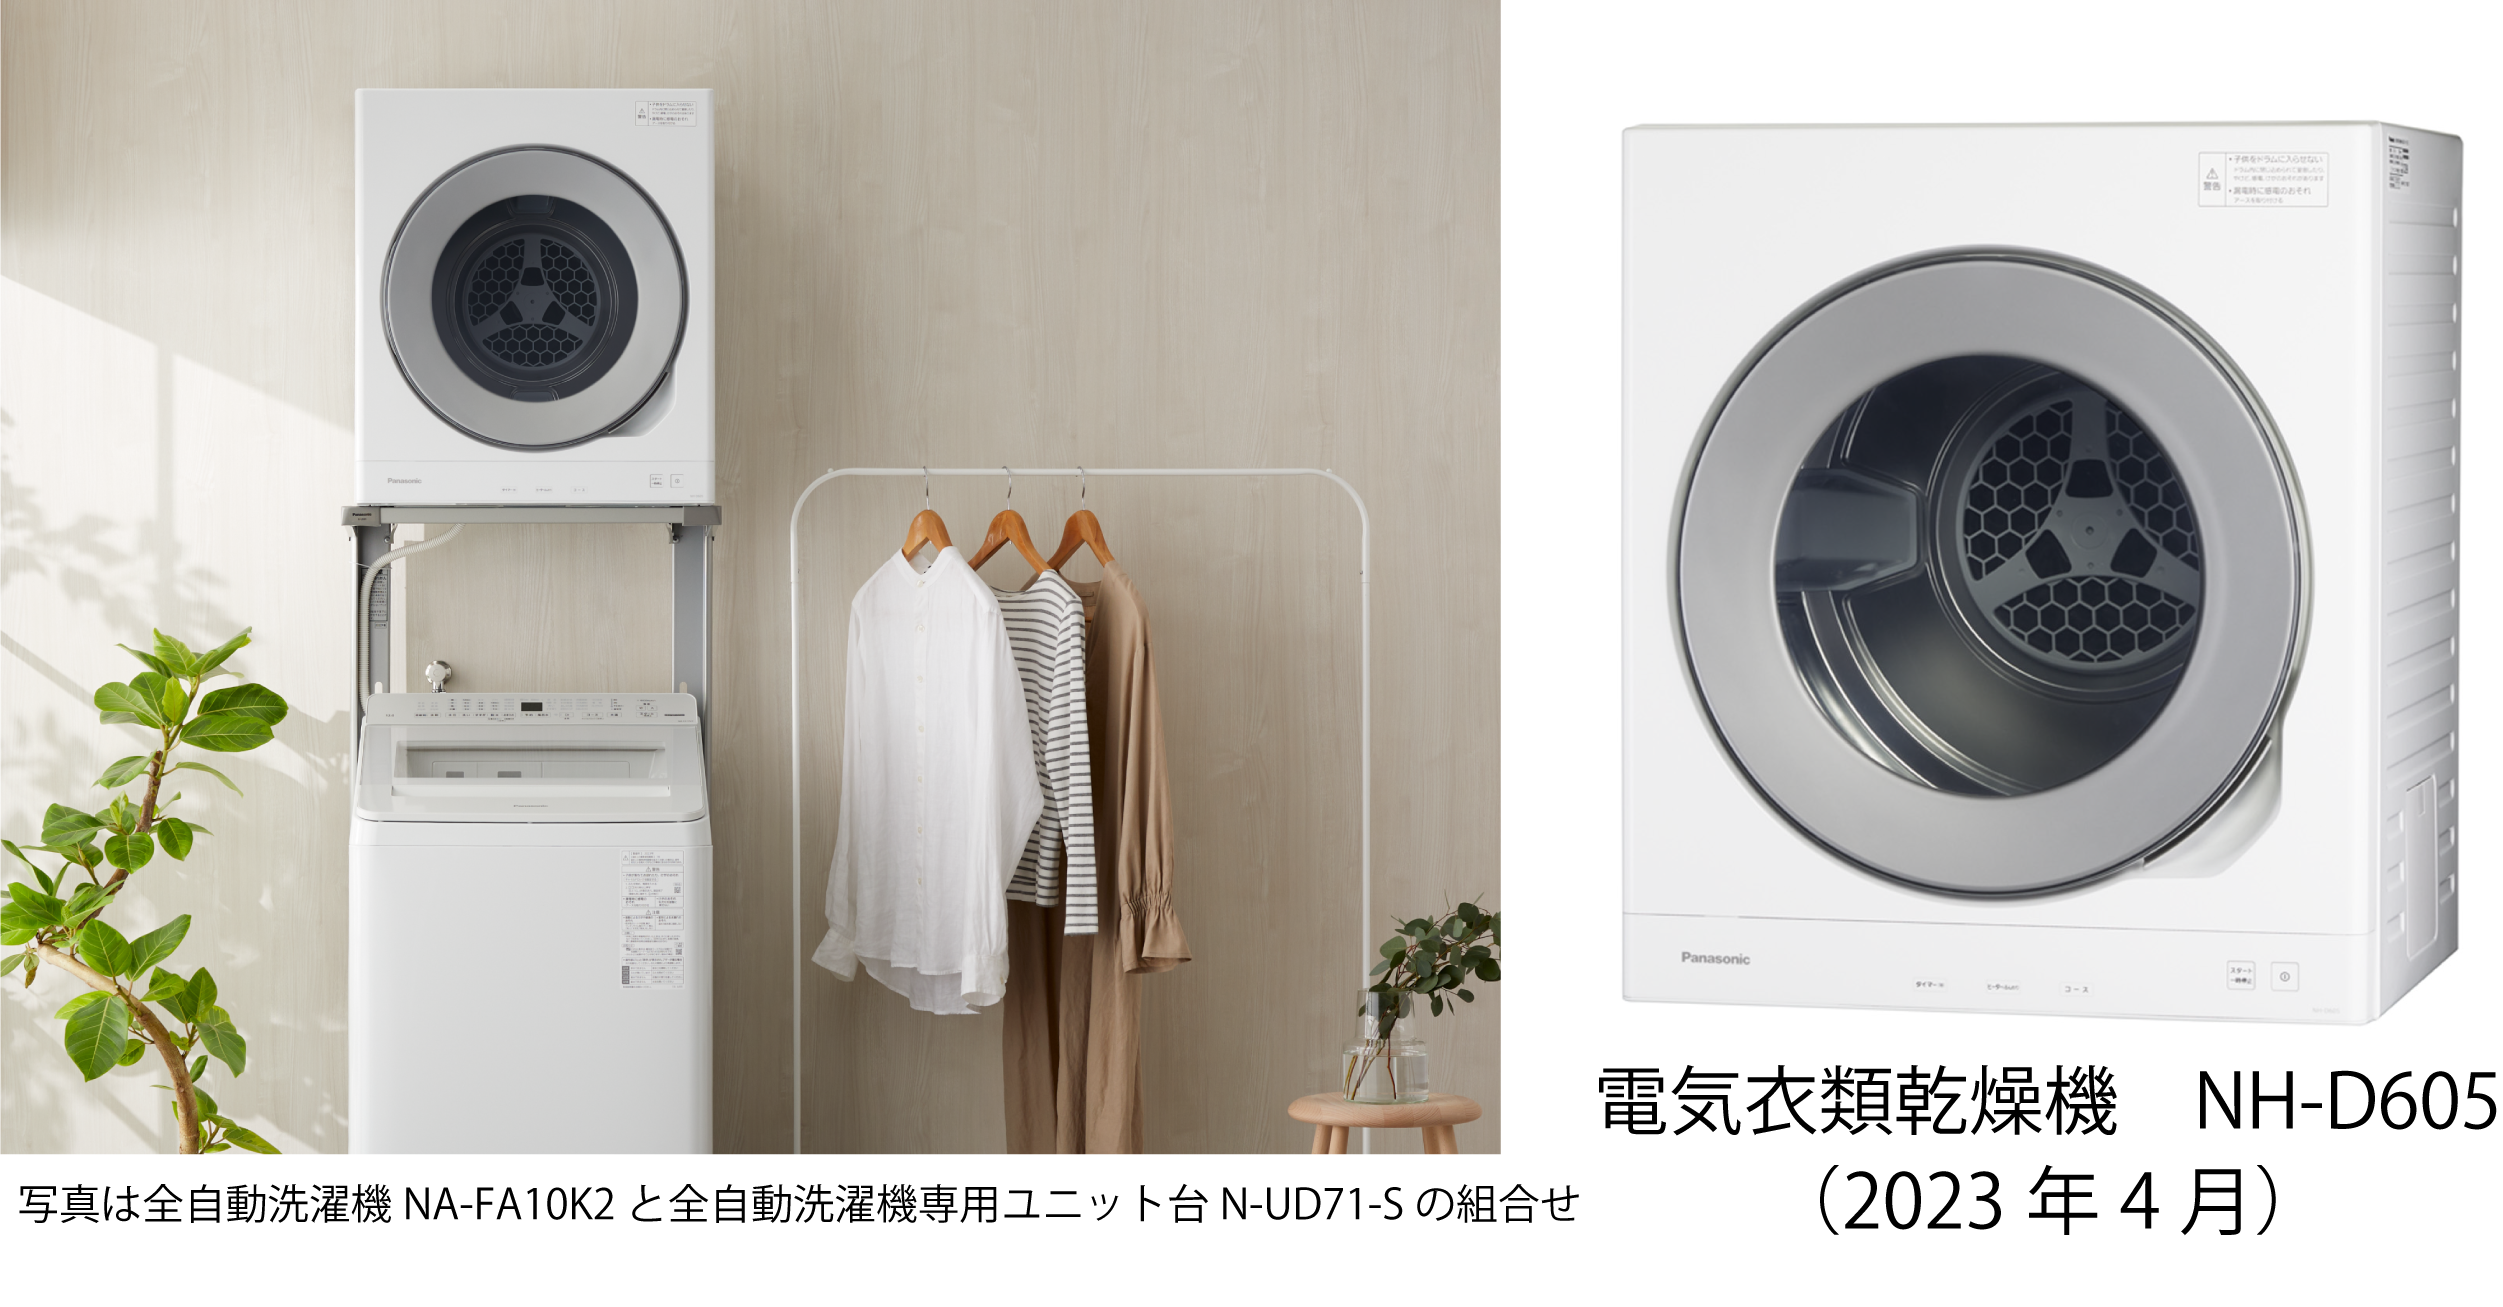 使いやすさと上質なデザインを両立。電気衣類乾燥機 NH-D605 を発売 ...